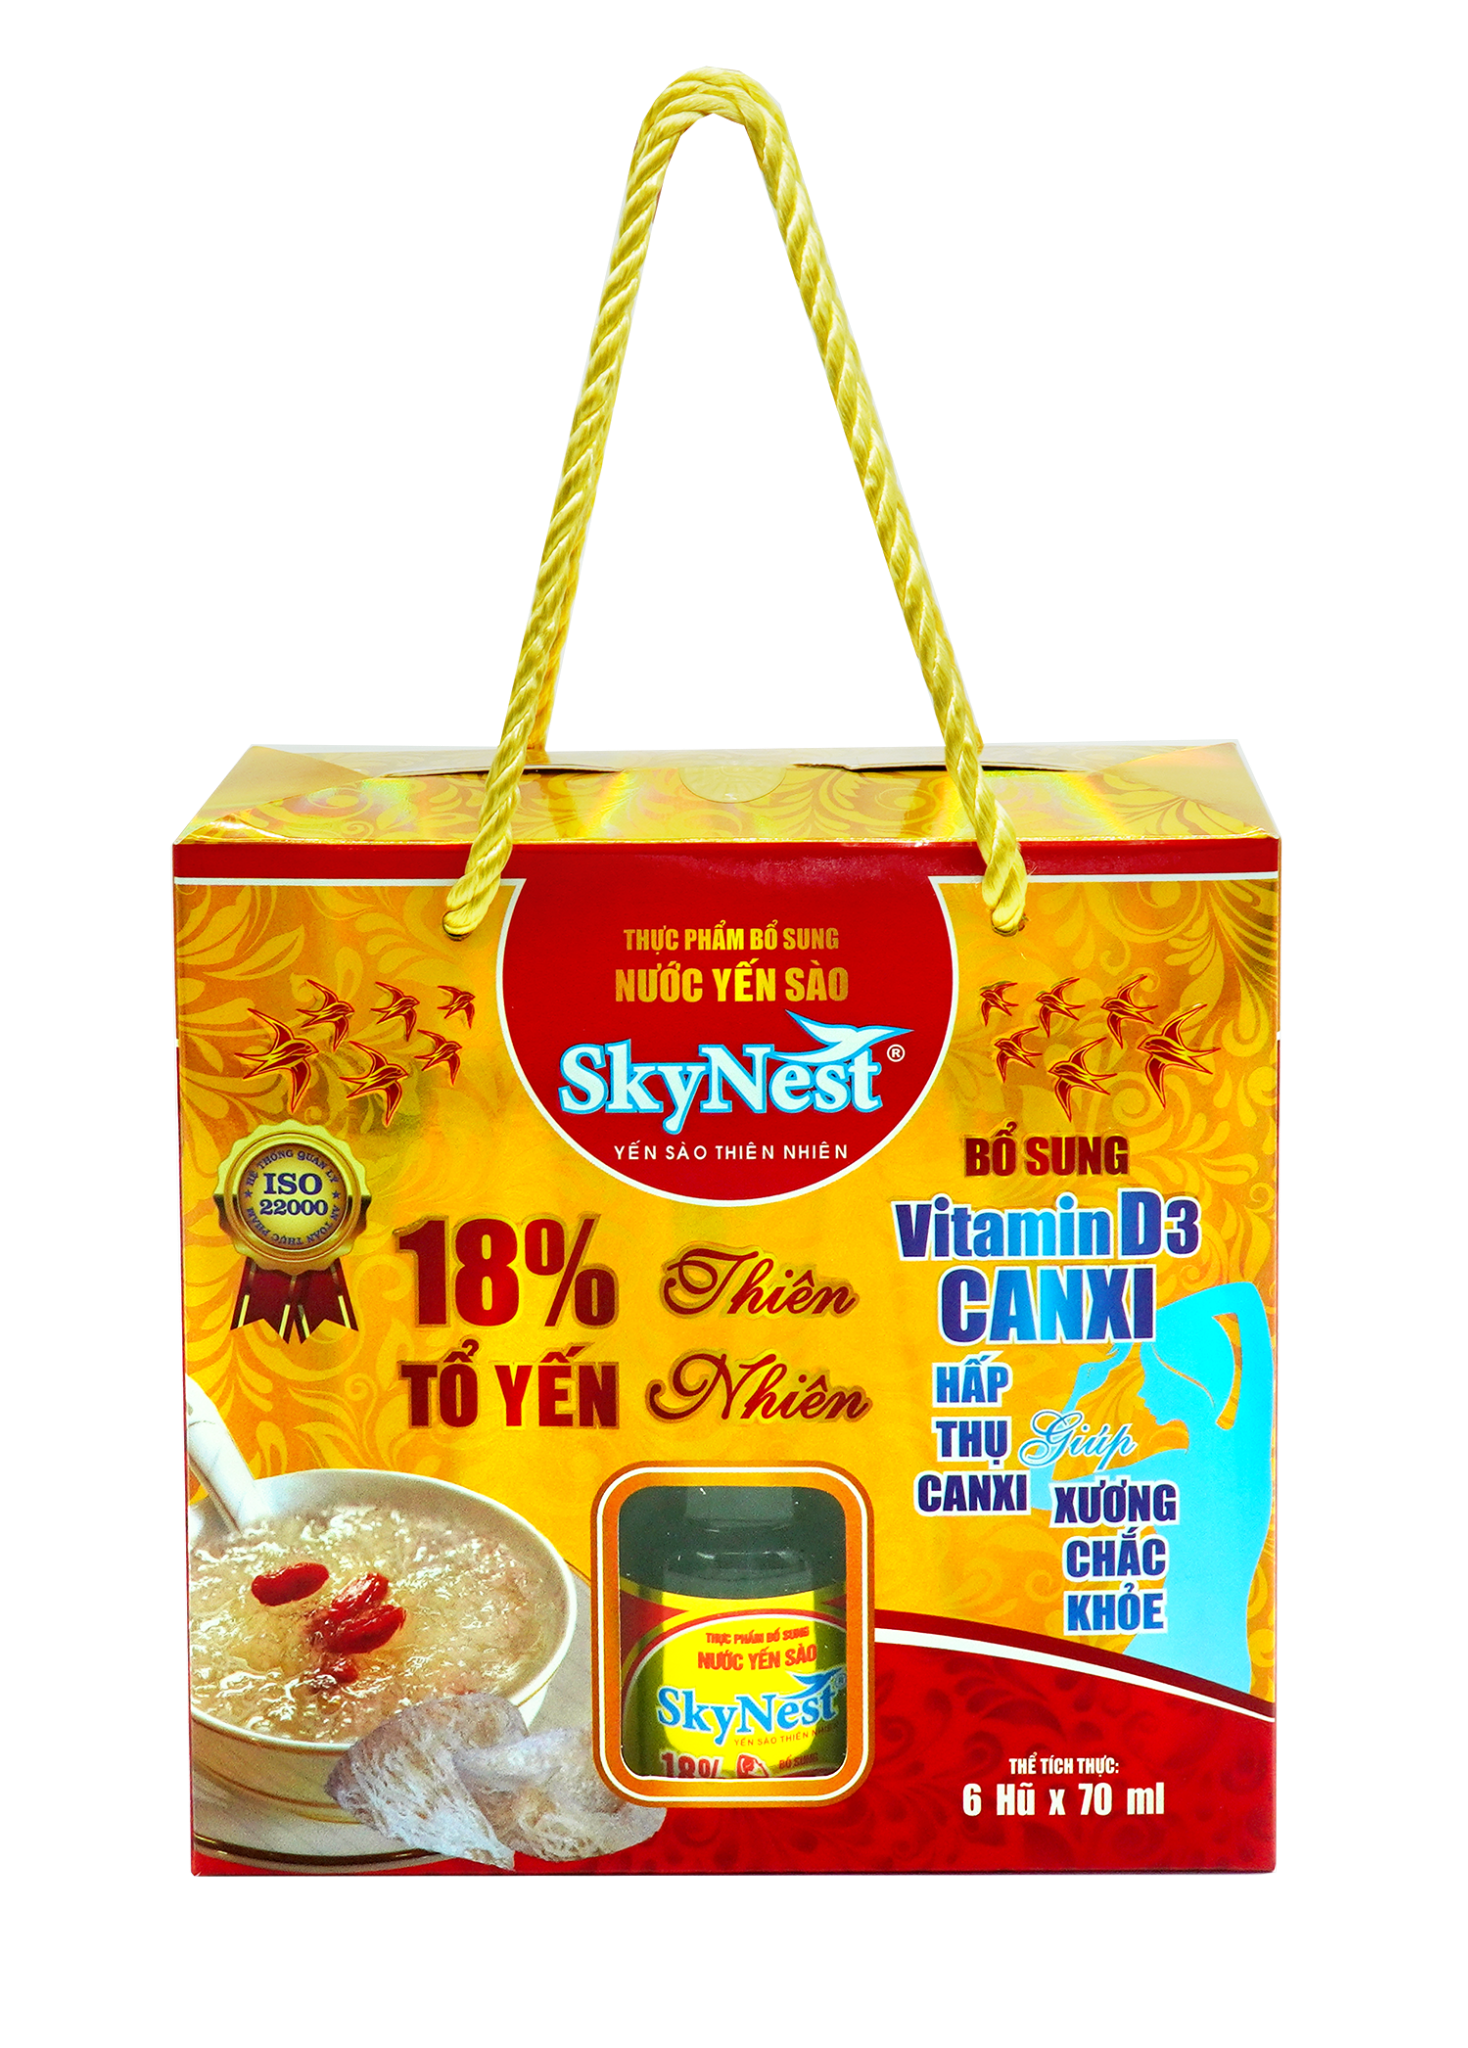  Hộp quà 6 lọ x 70ml - Thực phẩm bổ sung Nước yến sào SkyNest 18% tổ yến Vitamin D3 Canxi 